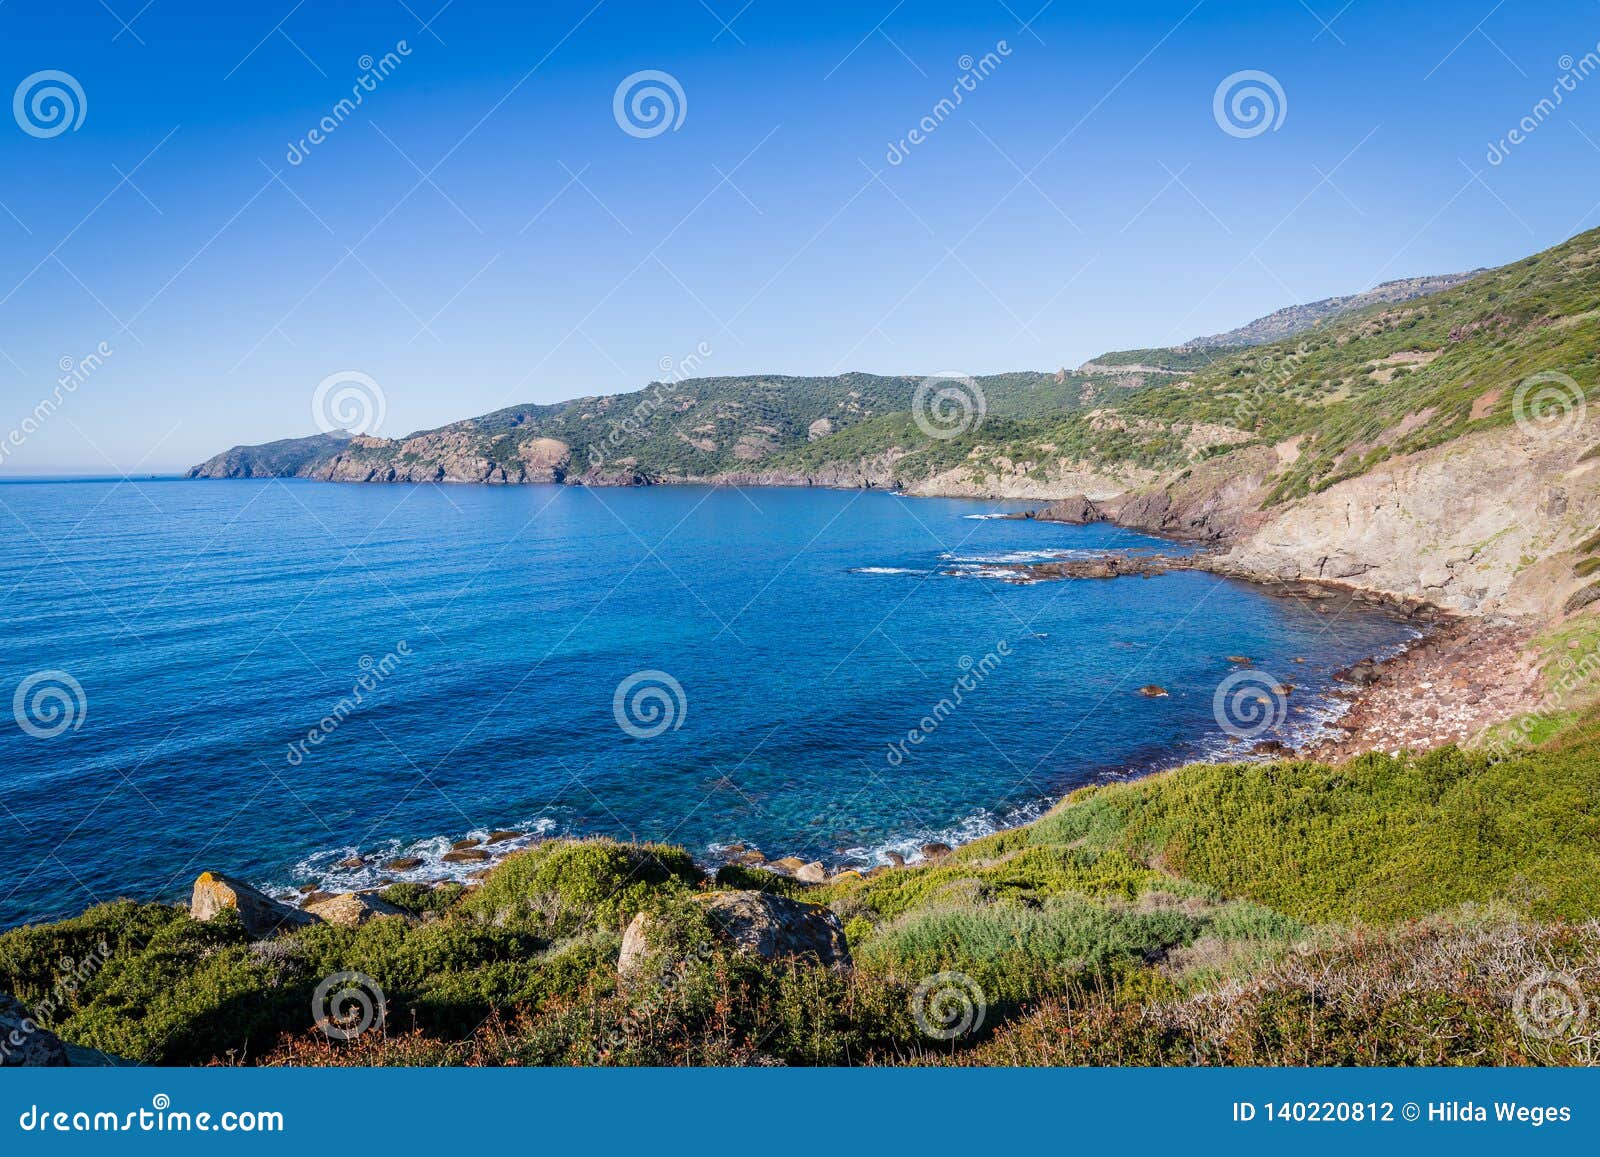 North Coast Sardinia Italy Stock Photo - Image of paradise, 140220812